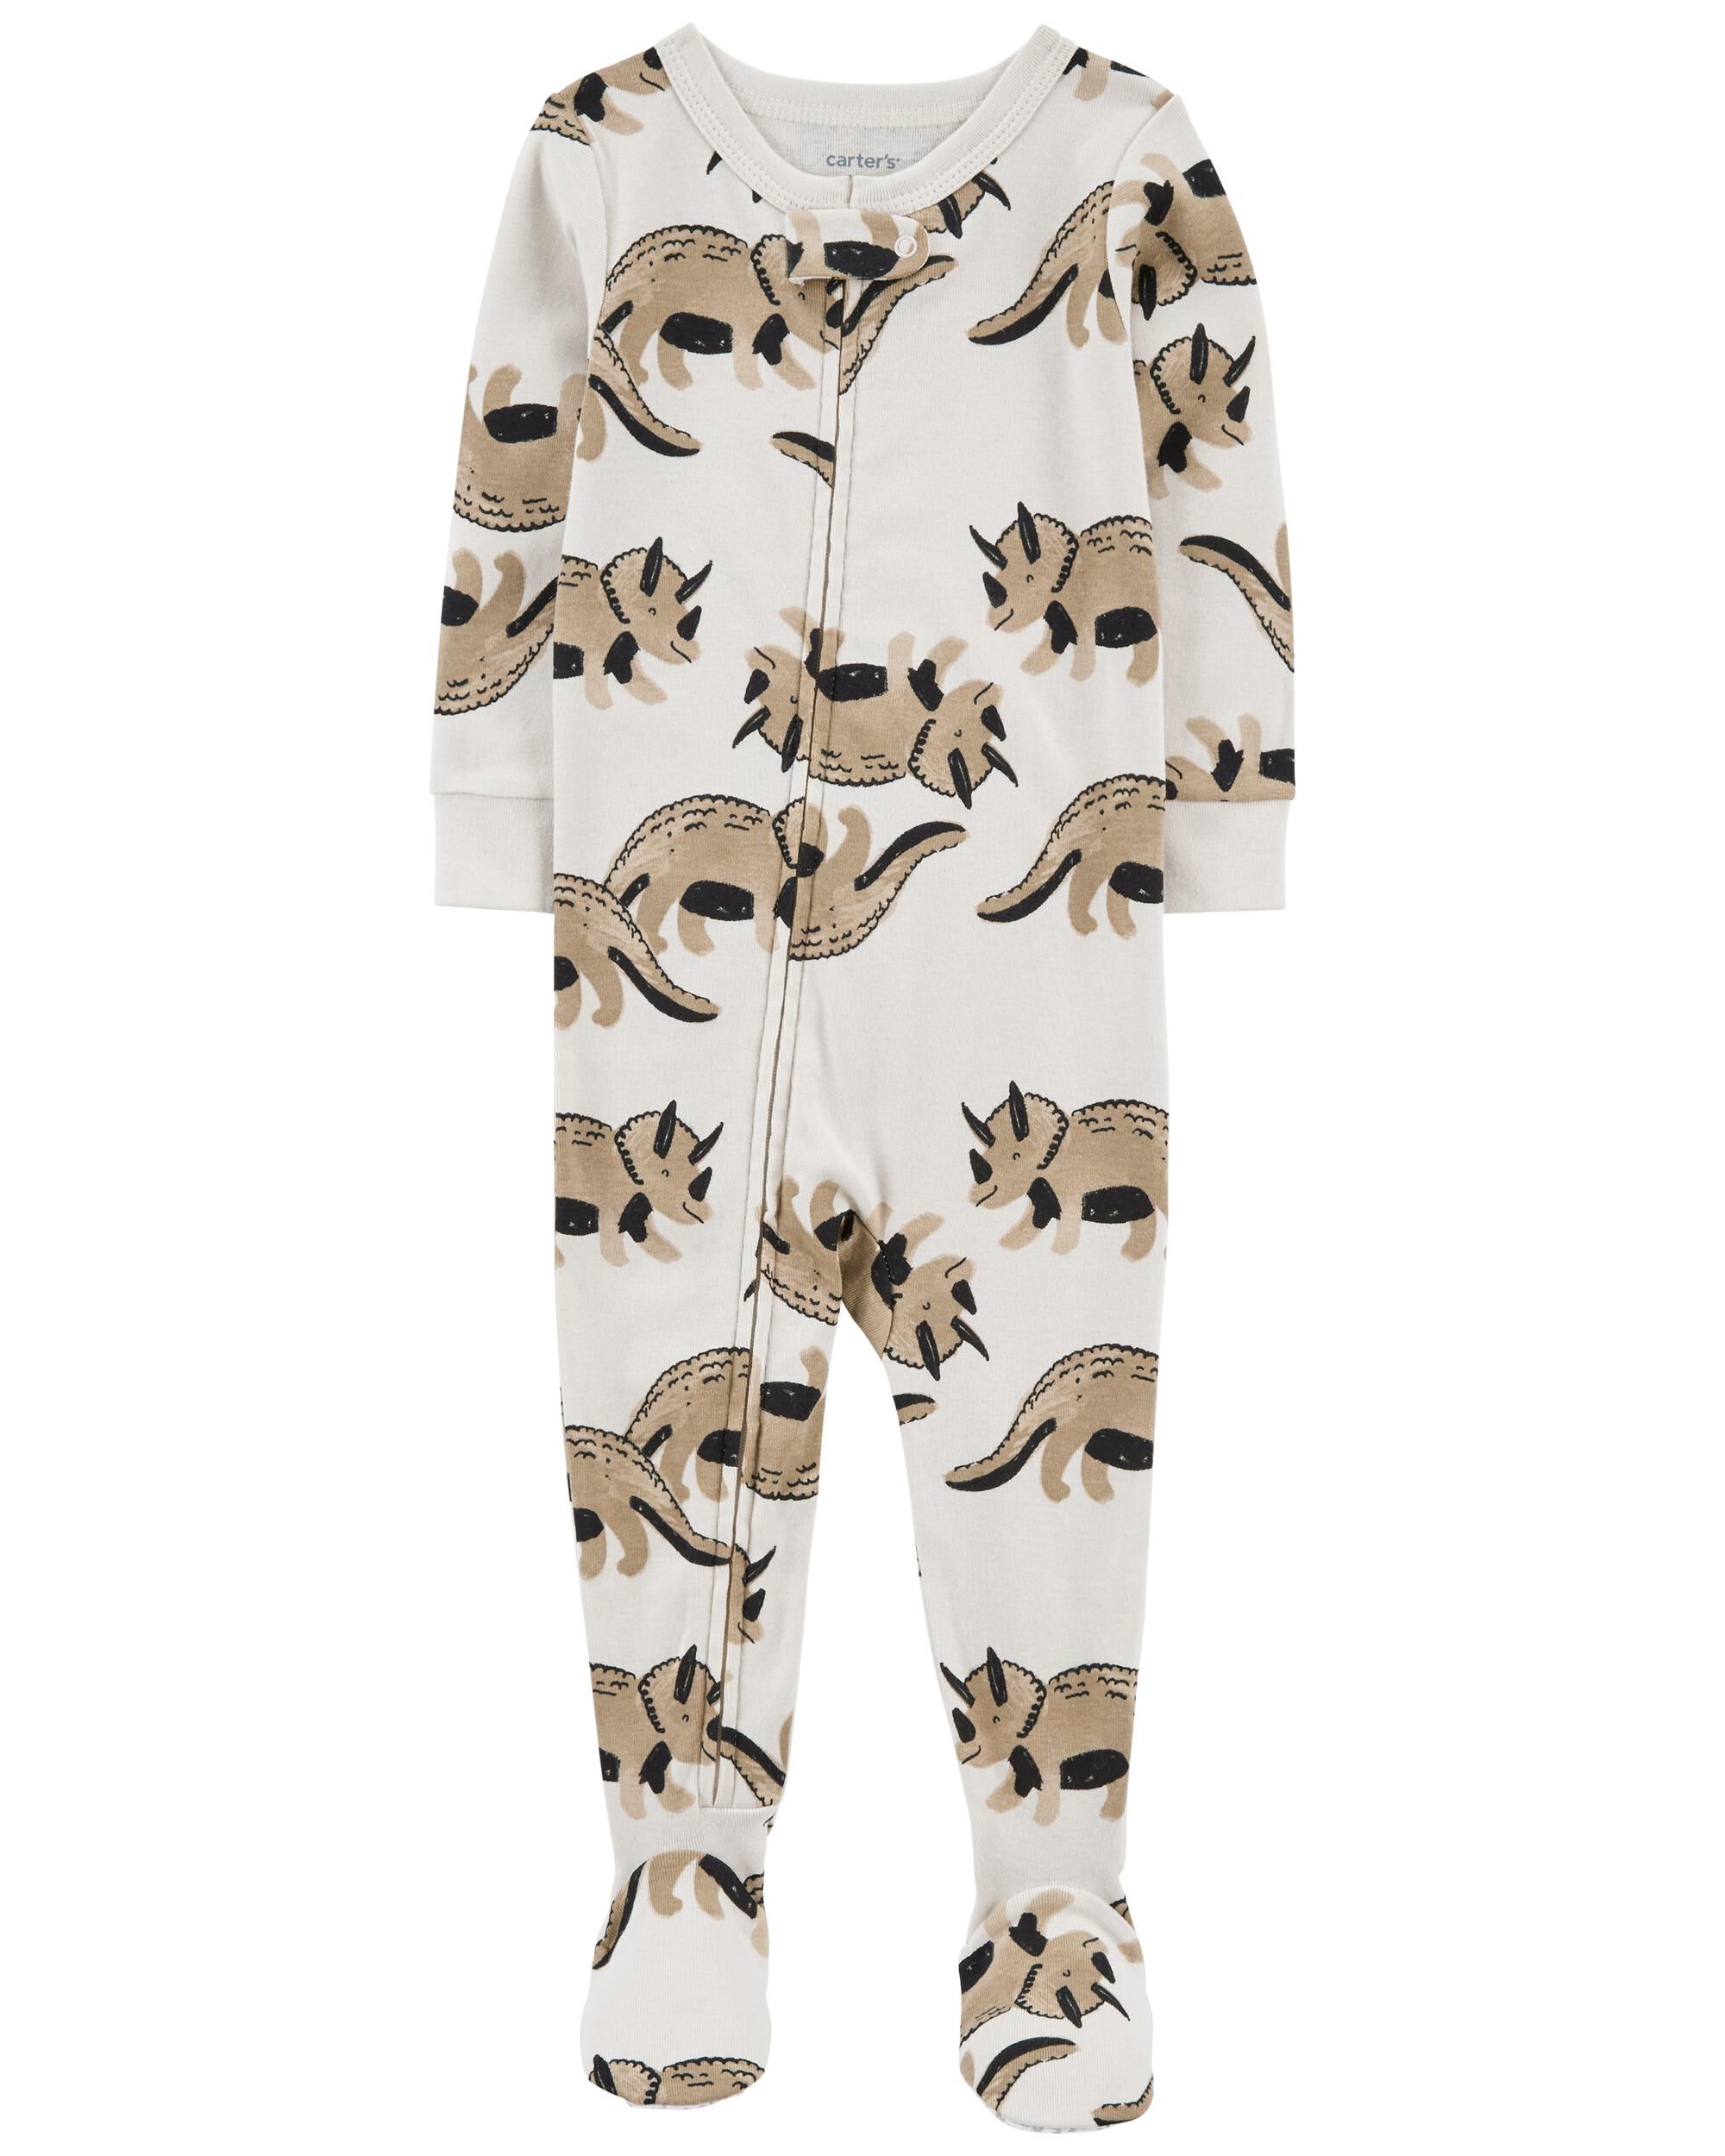 Carters Baby Boys 2T-5T One Piece Dinosaur Snug Fit Cotton Pajamas 